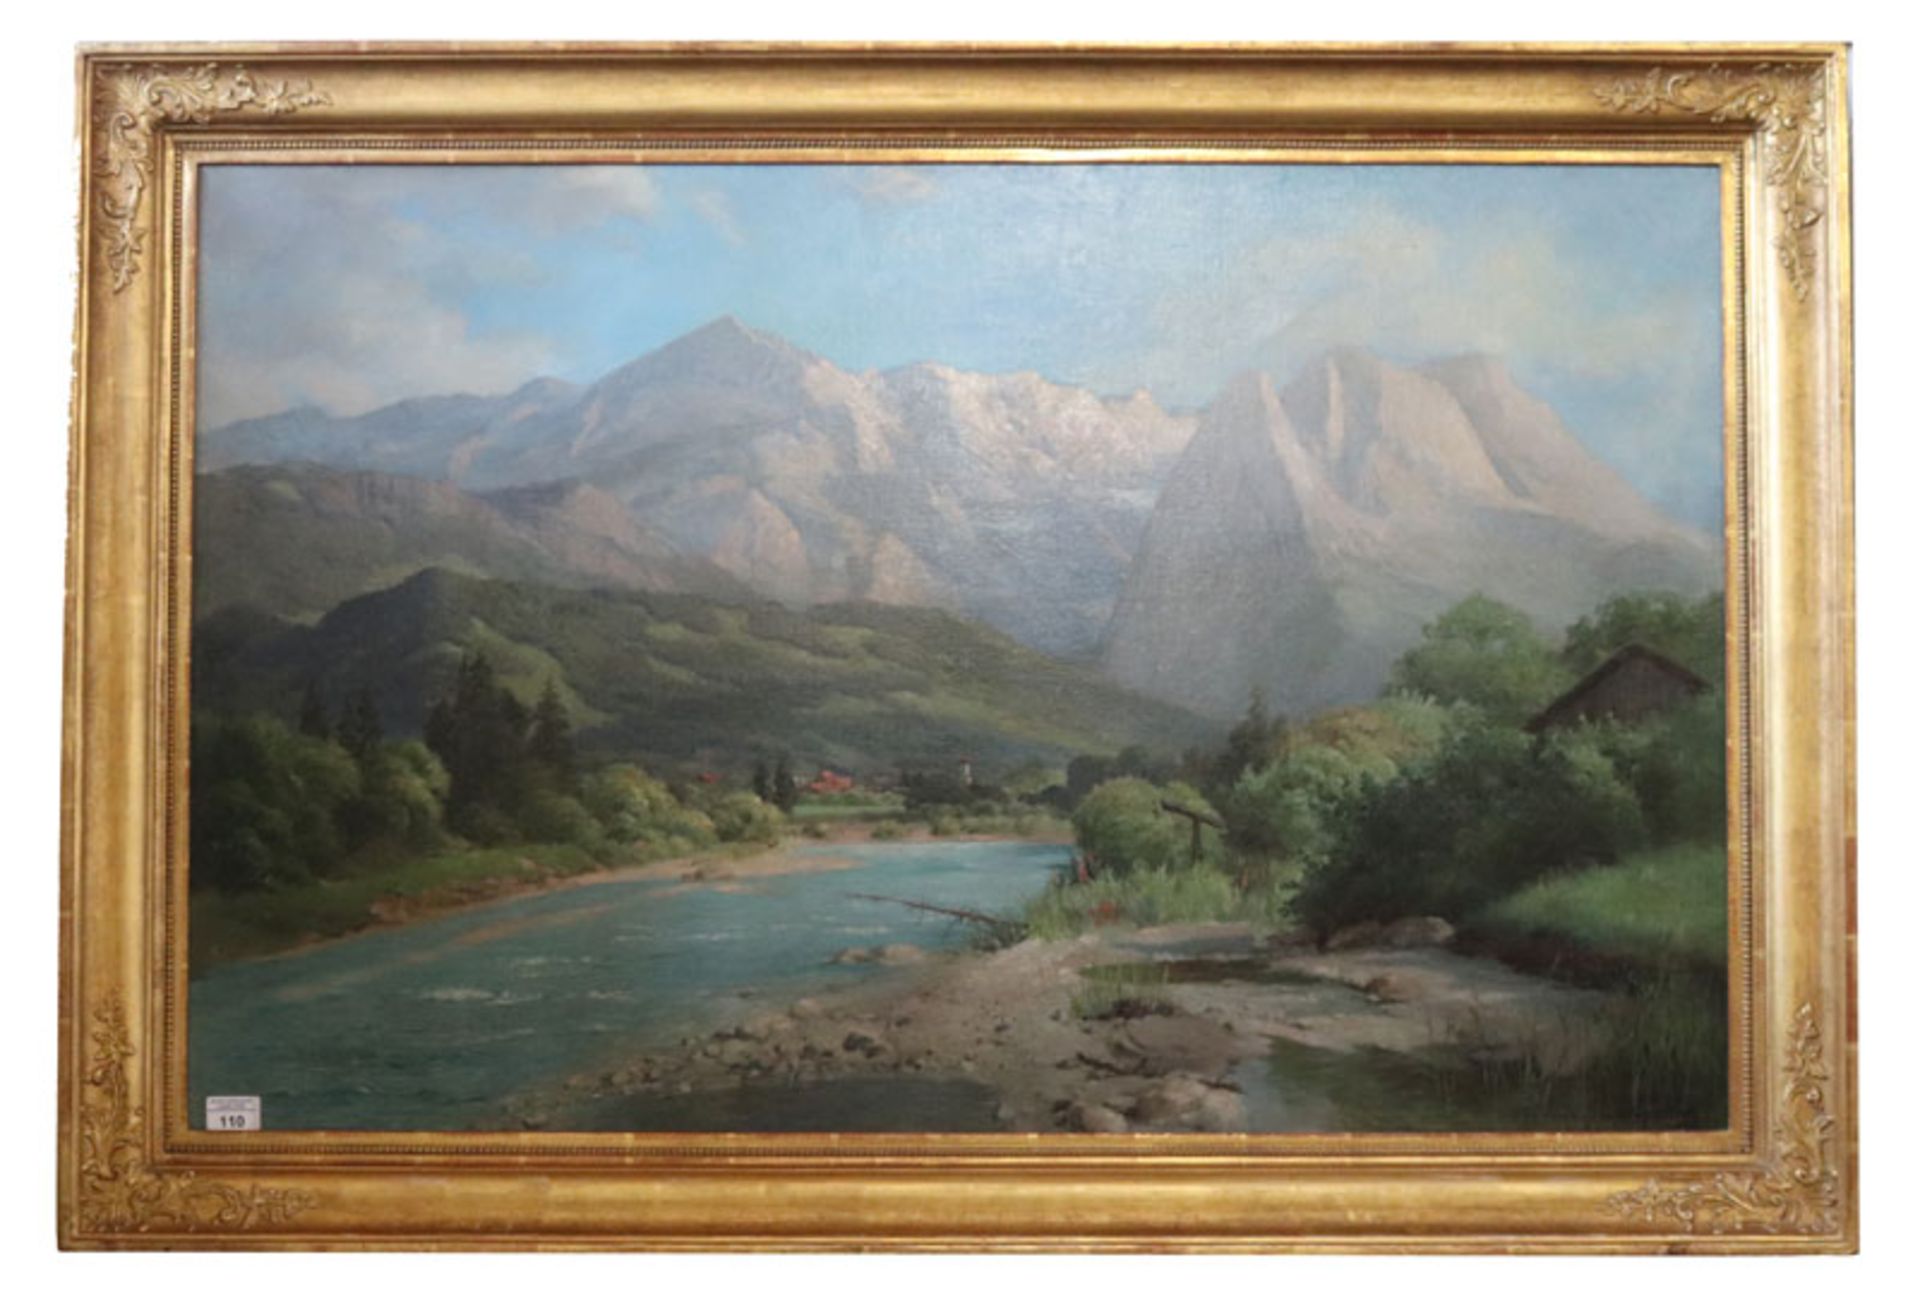 Gemälde ÖL/LW 'Loisach mit Blick aufs Wettersteingebirge', signiert H. Sperlich, gerahmt, Rahmen